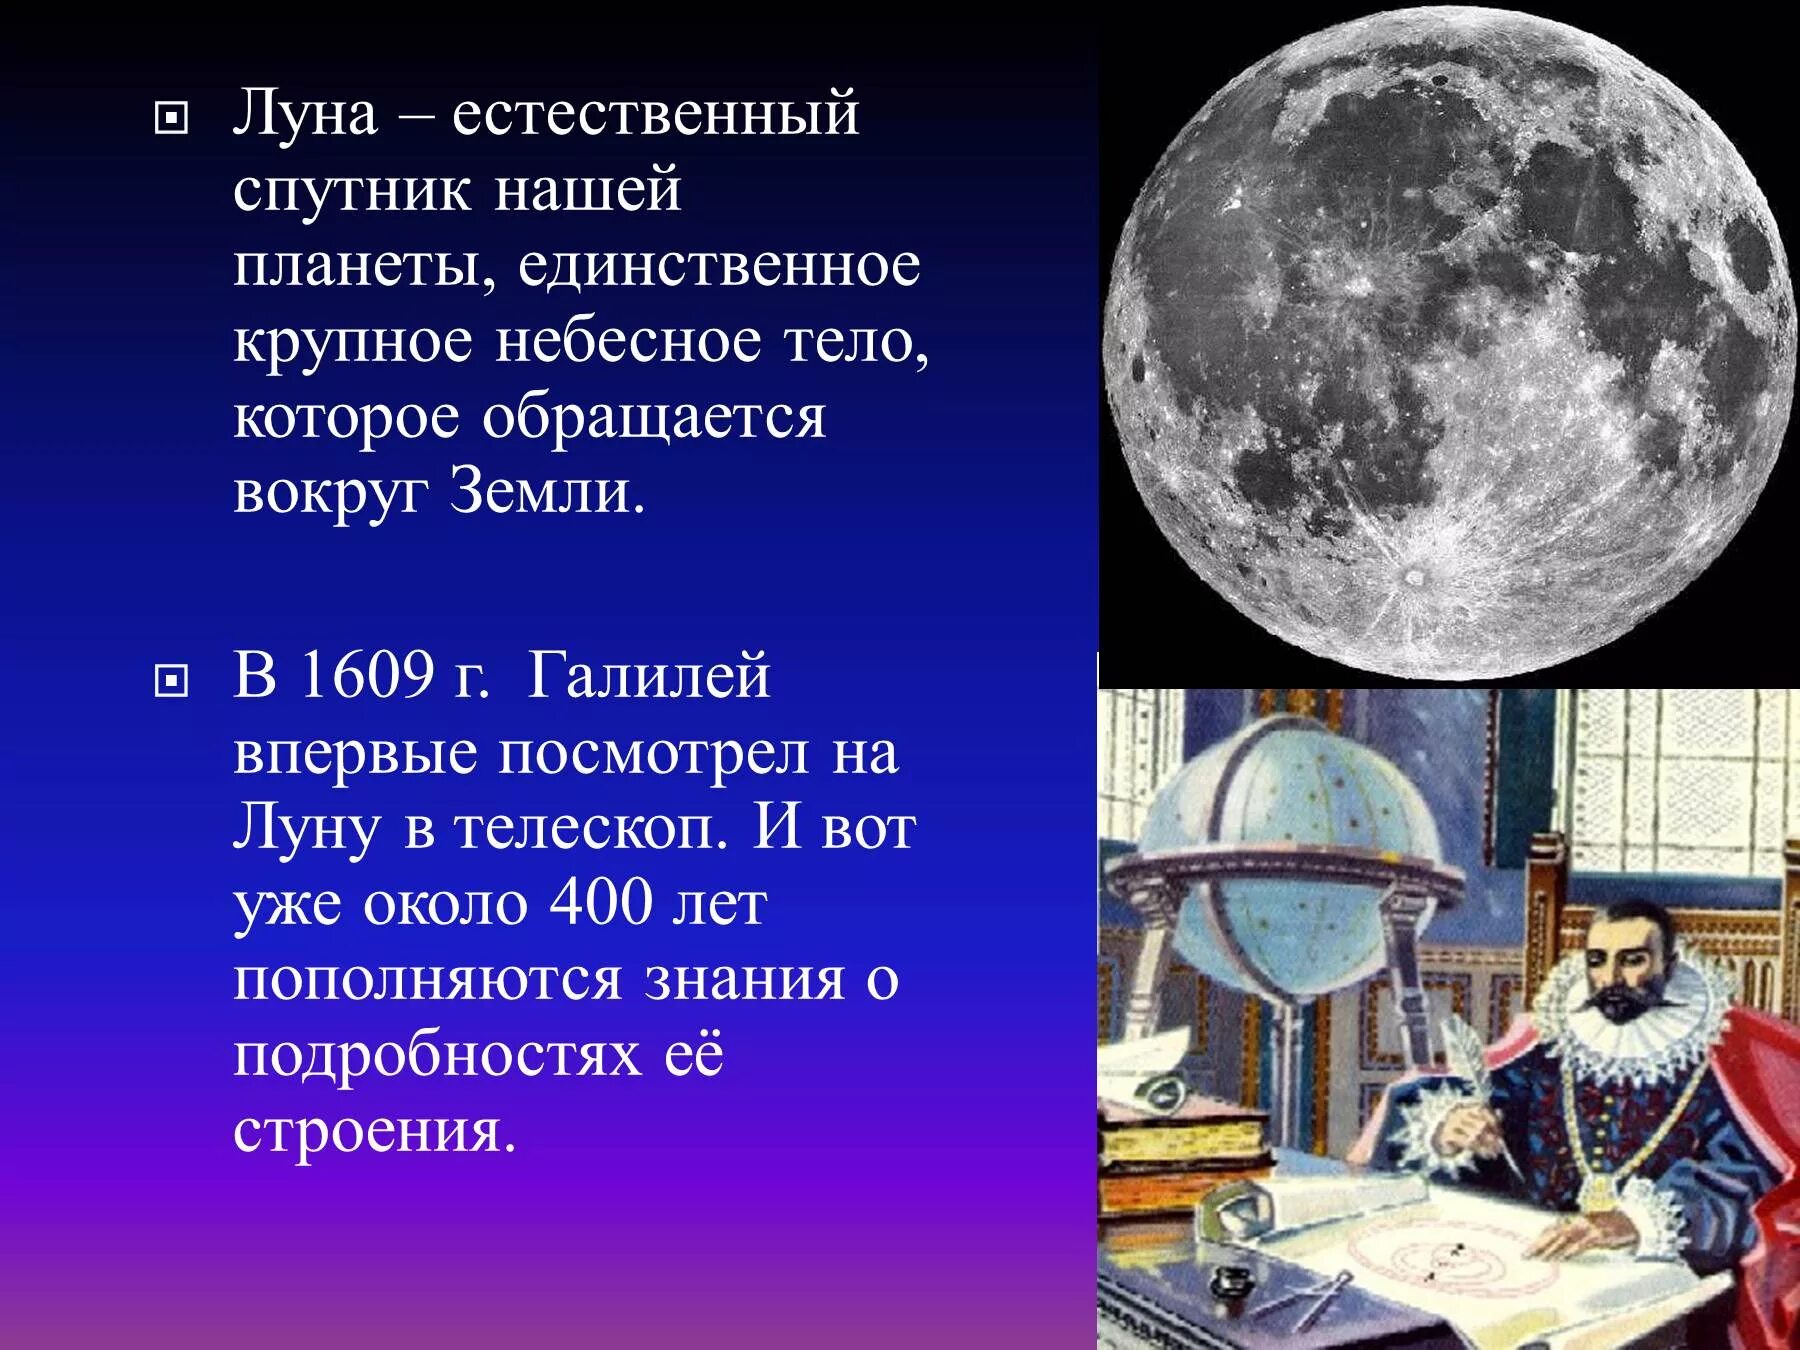 Луна естественный Спутник земли. Луна для презентации. Общие сведения о Луне. Луна единственный естественный Спутник нашей планеты. Луна краткий рассказ